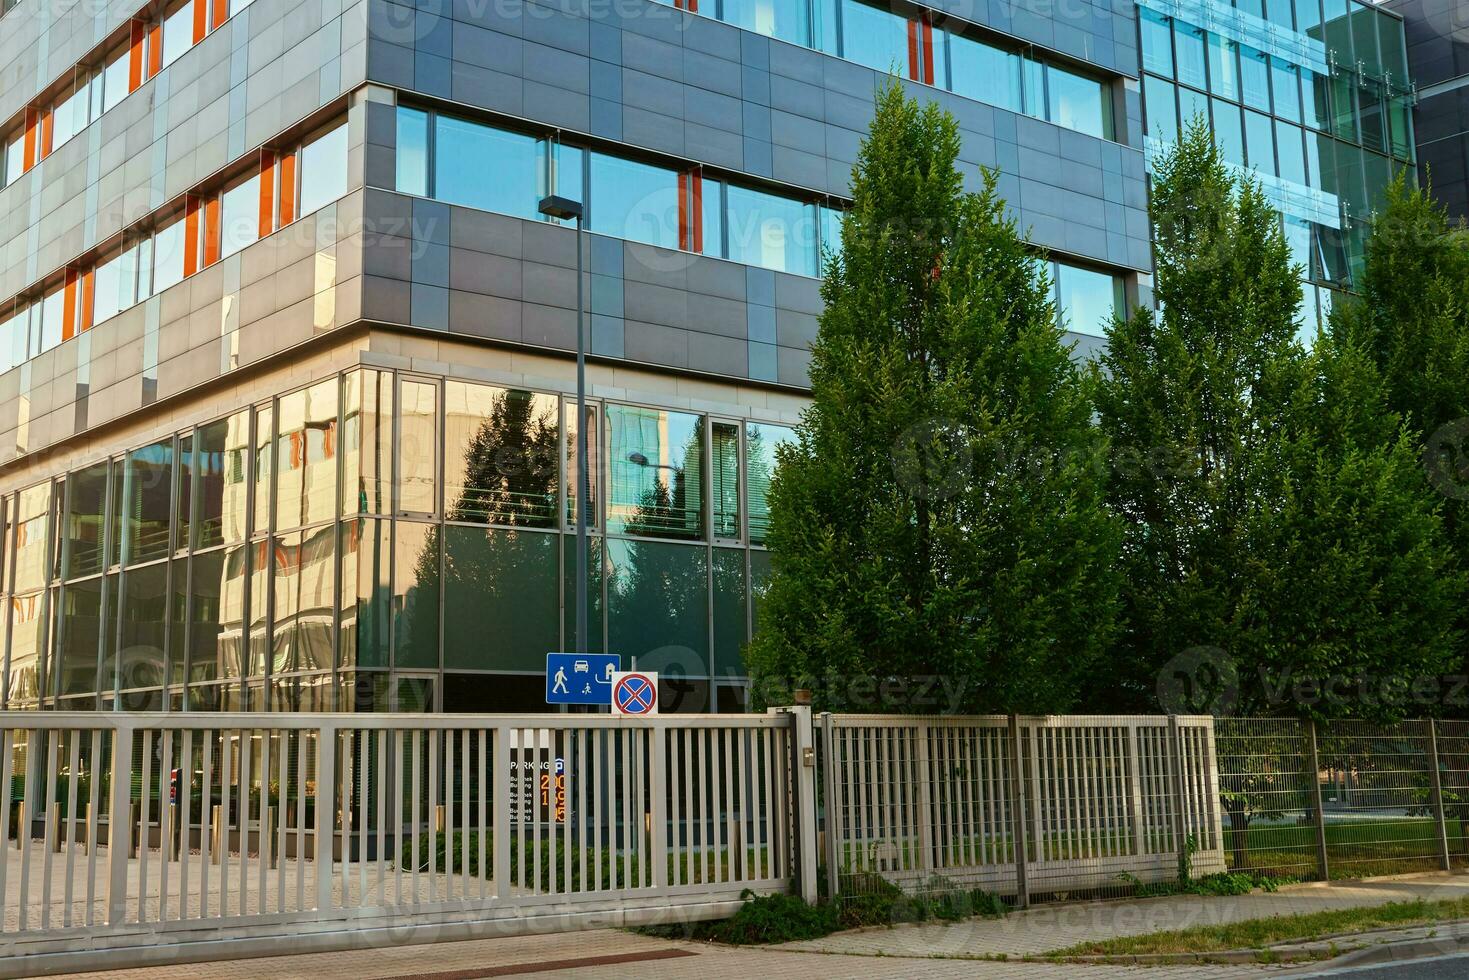 moderne Bureau bâtiment avec vert des arbres photo